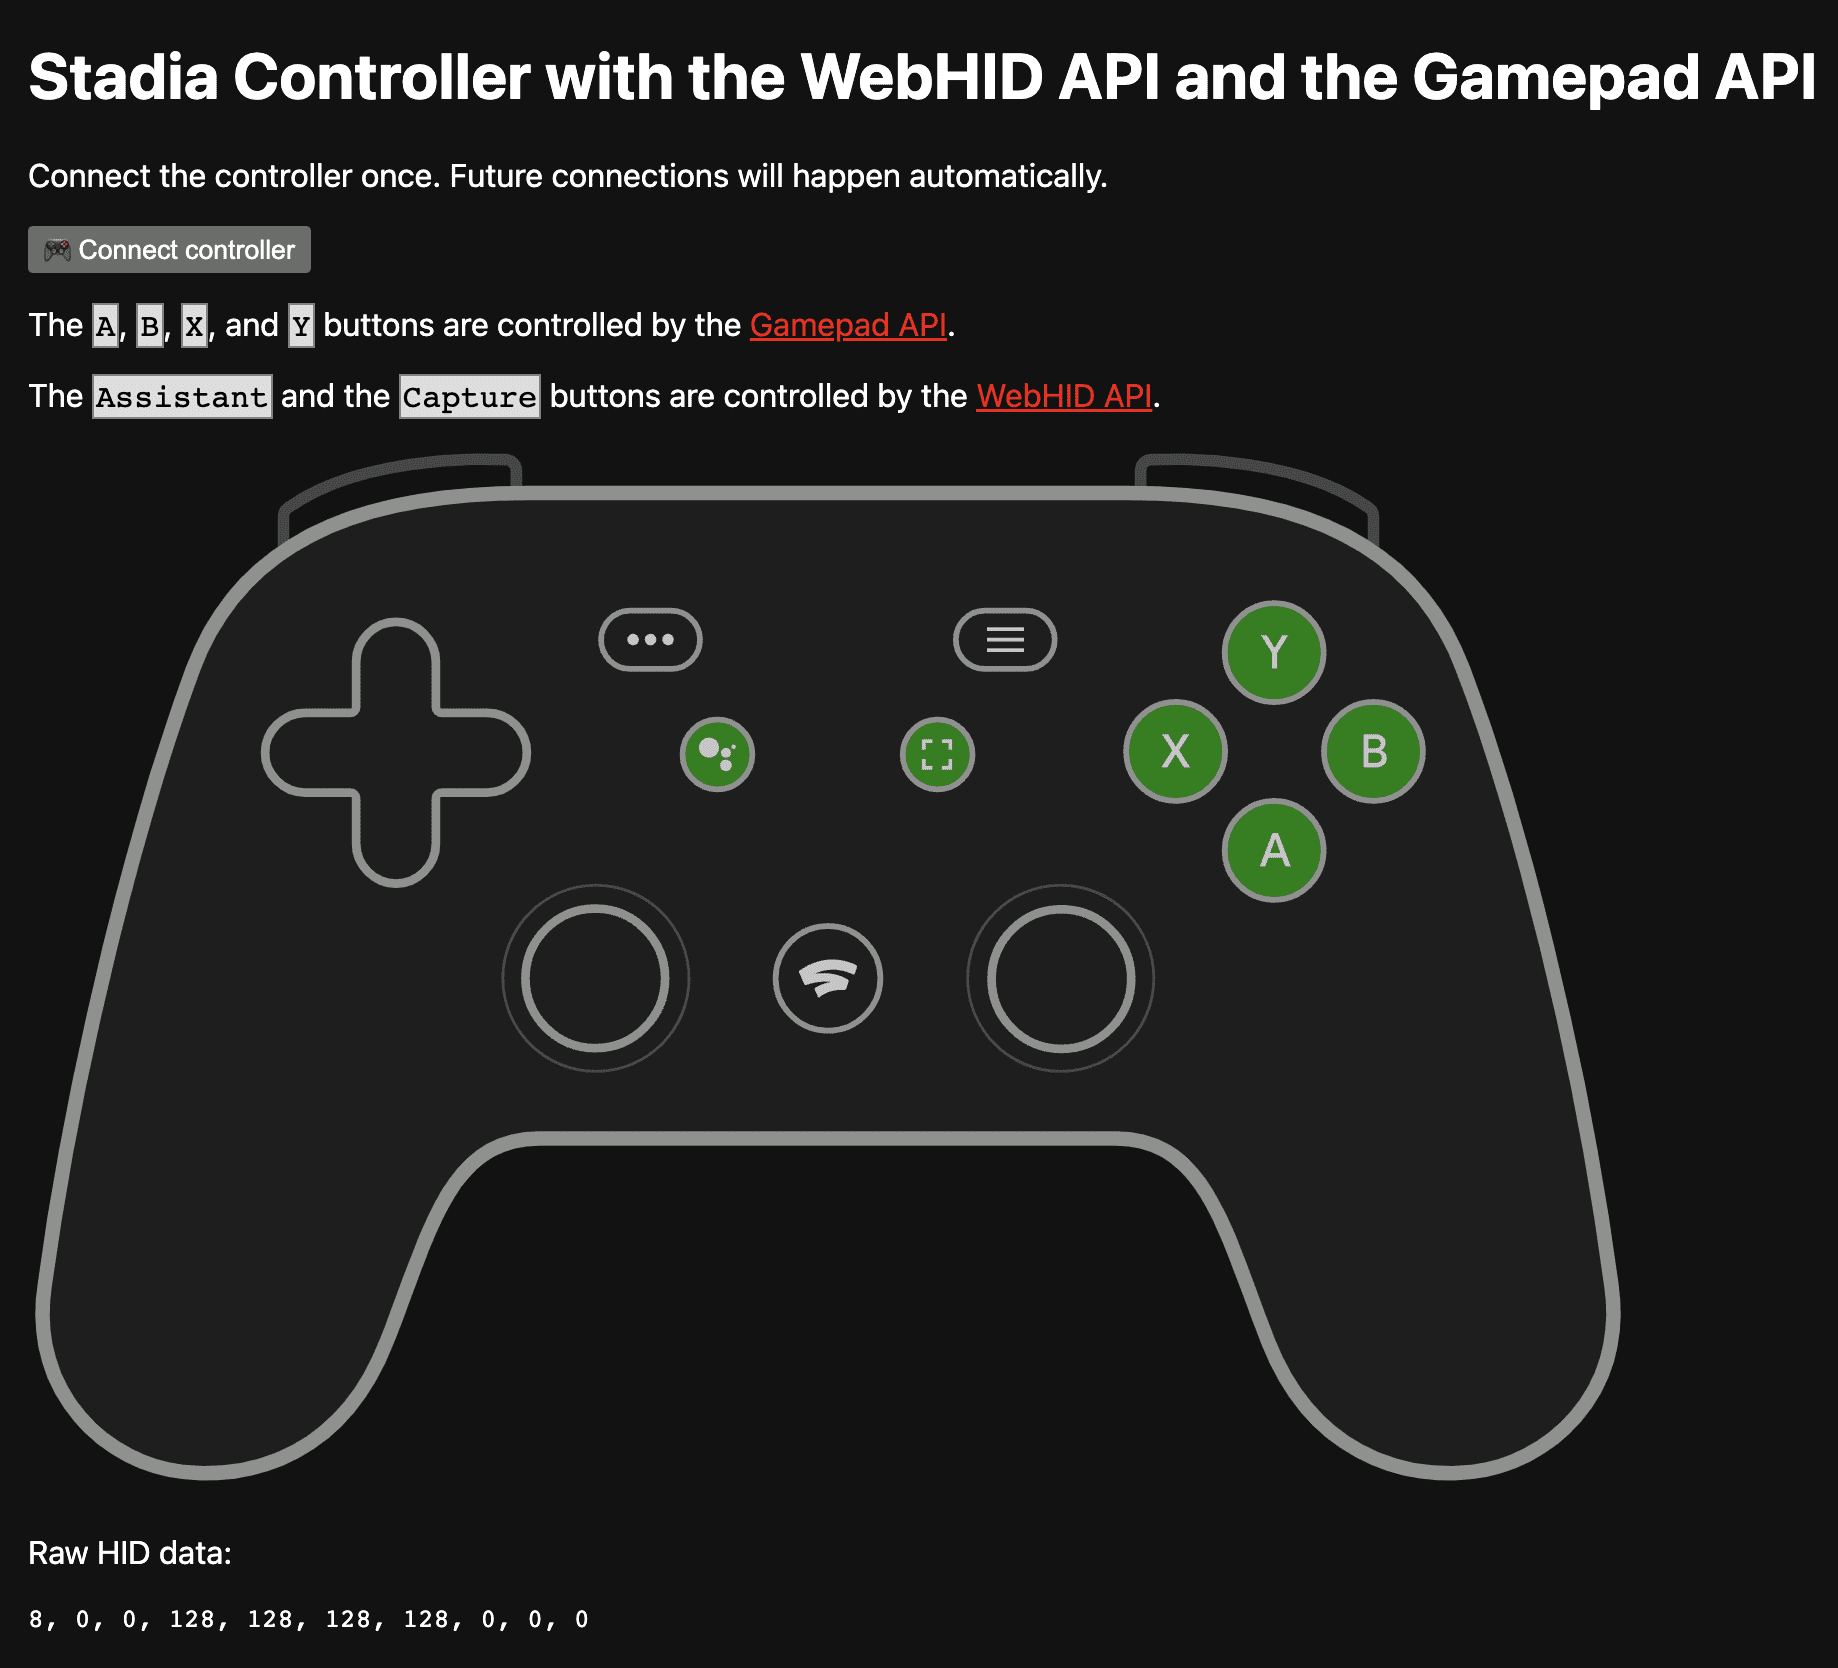 Gamepad API&#39;si ile kontrol edilen A, B, X ve Y düğmelerinin yanı sıra WebHID API tarafından kontrol edilen Asistan ve Yakalama düğmelerini gösteren https://stadia-controller-webhid-gamepad.glitch.me/ adresindeki demo uygulaması.